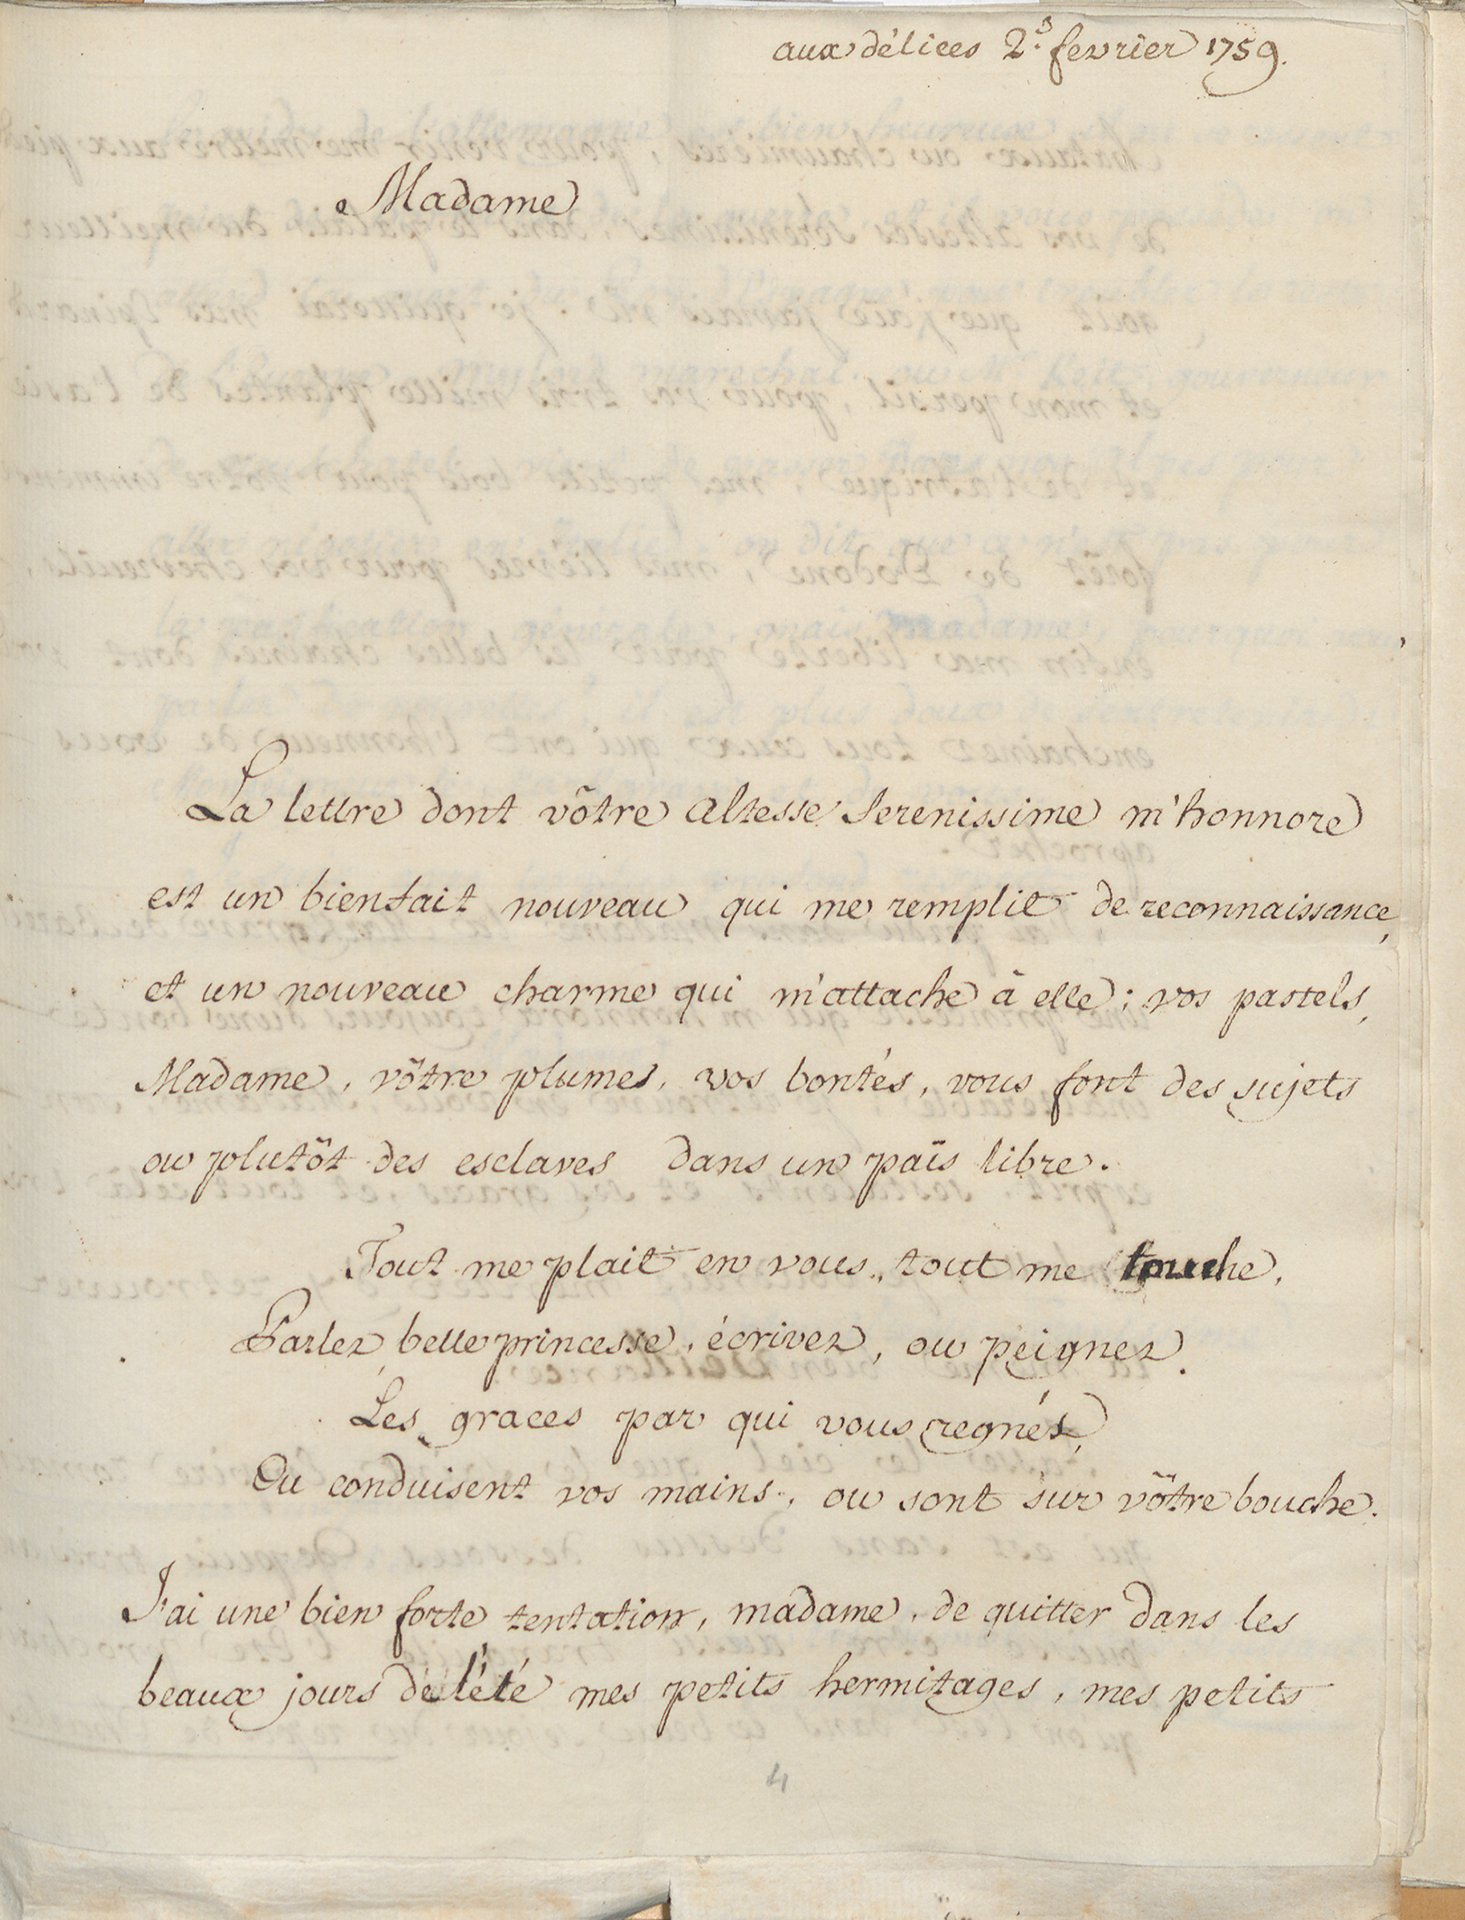 Abbildung des Briefs von Voltaire an Karoline Luise vom 2. Februar 1759.